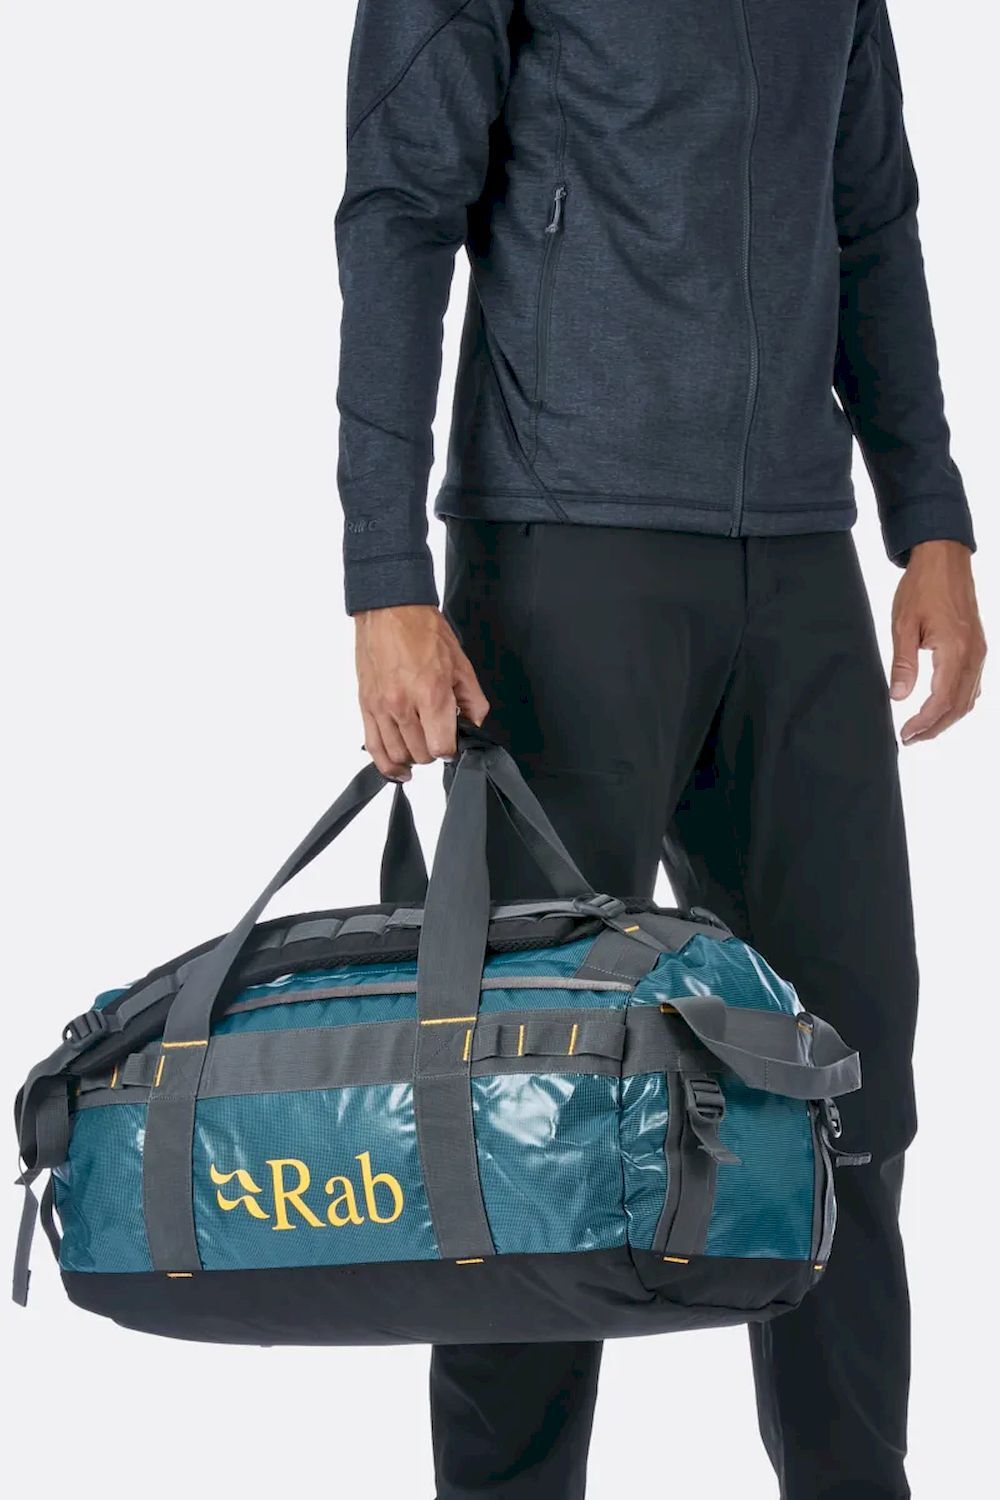 Rab Expedition Kitbag 50 - Mochila de viaje - Hombre